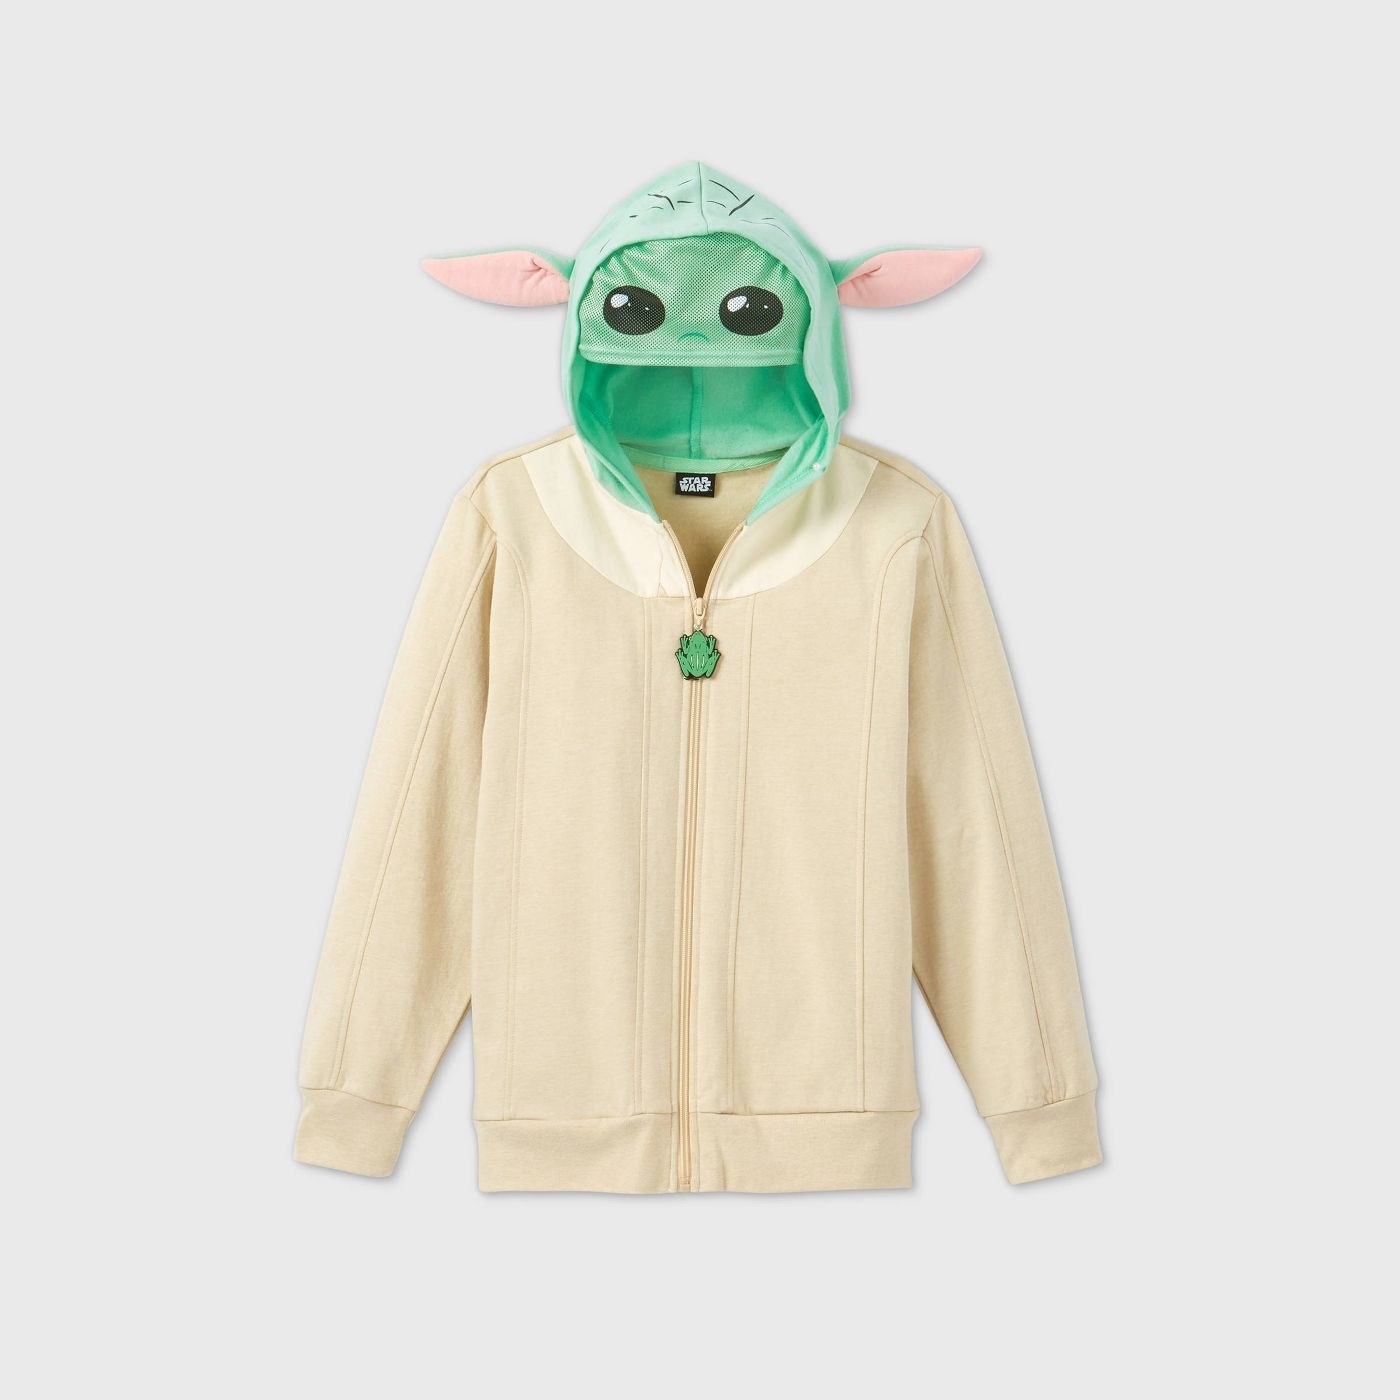 Baby Yoda hoodie